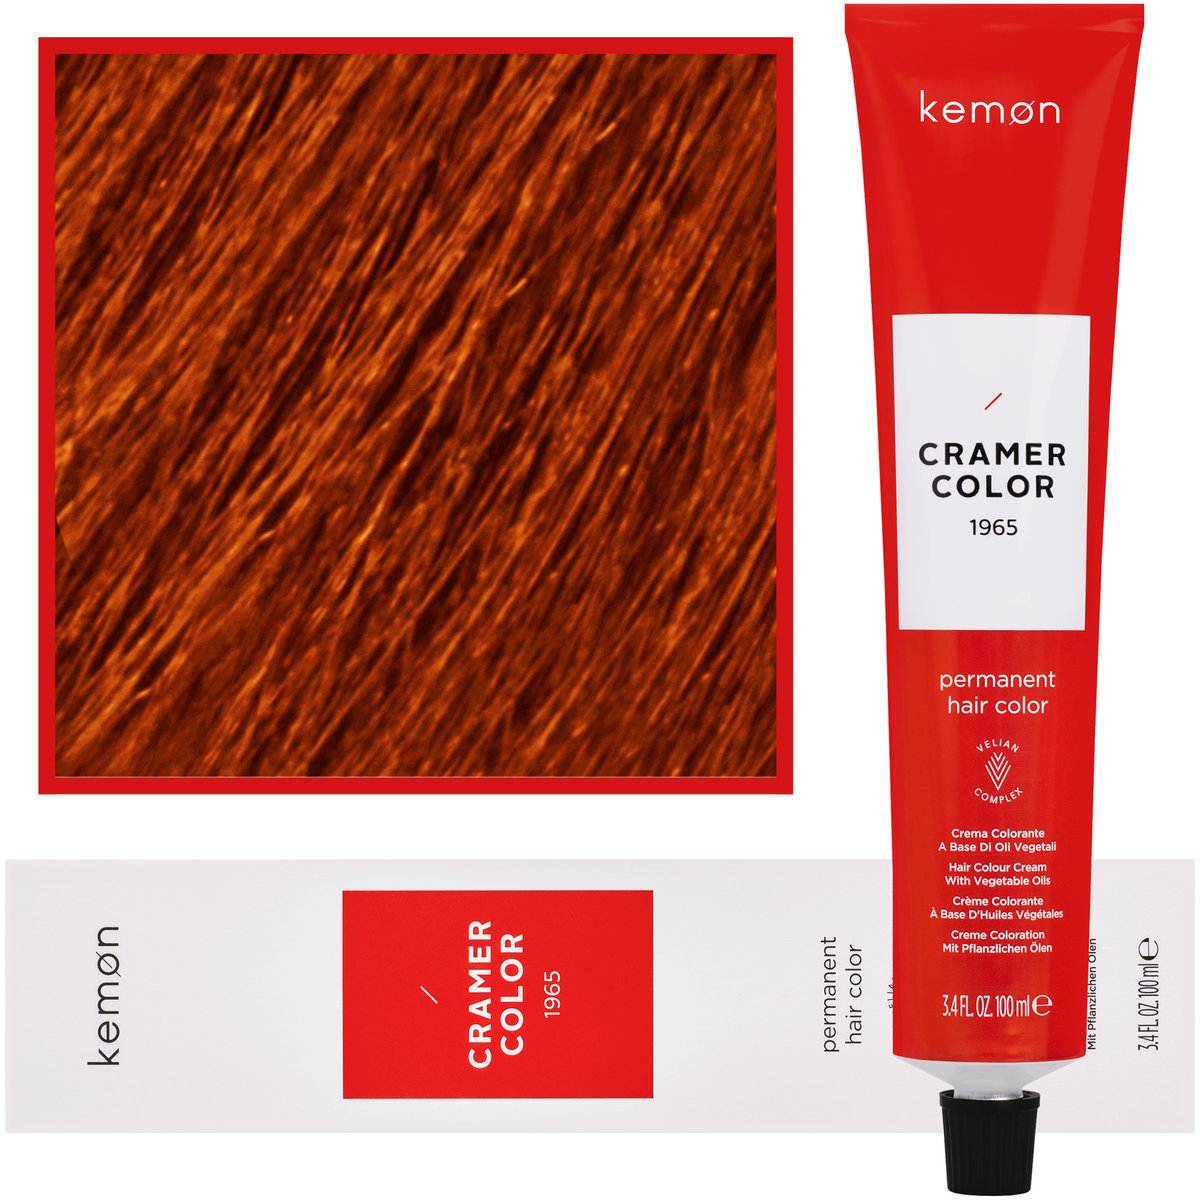 Zdjęcia - Farba do włosów Kemon , Cramer Color 100ml kremowa  z olejkami roślinnymi 8, 